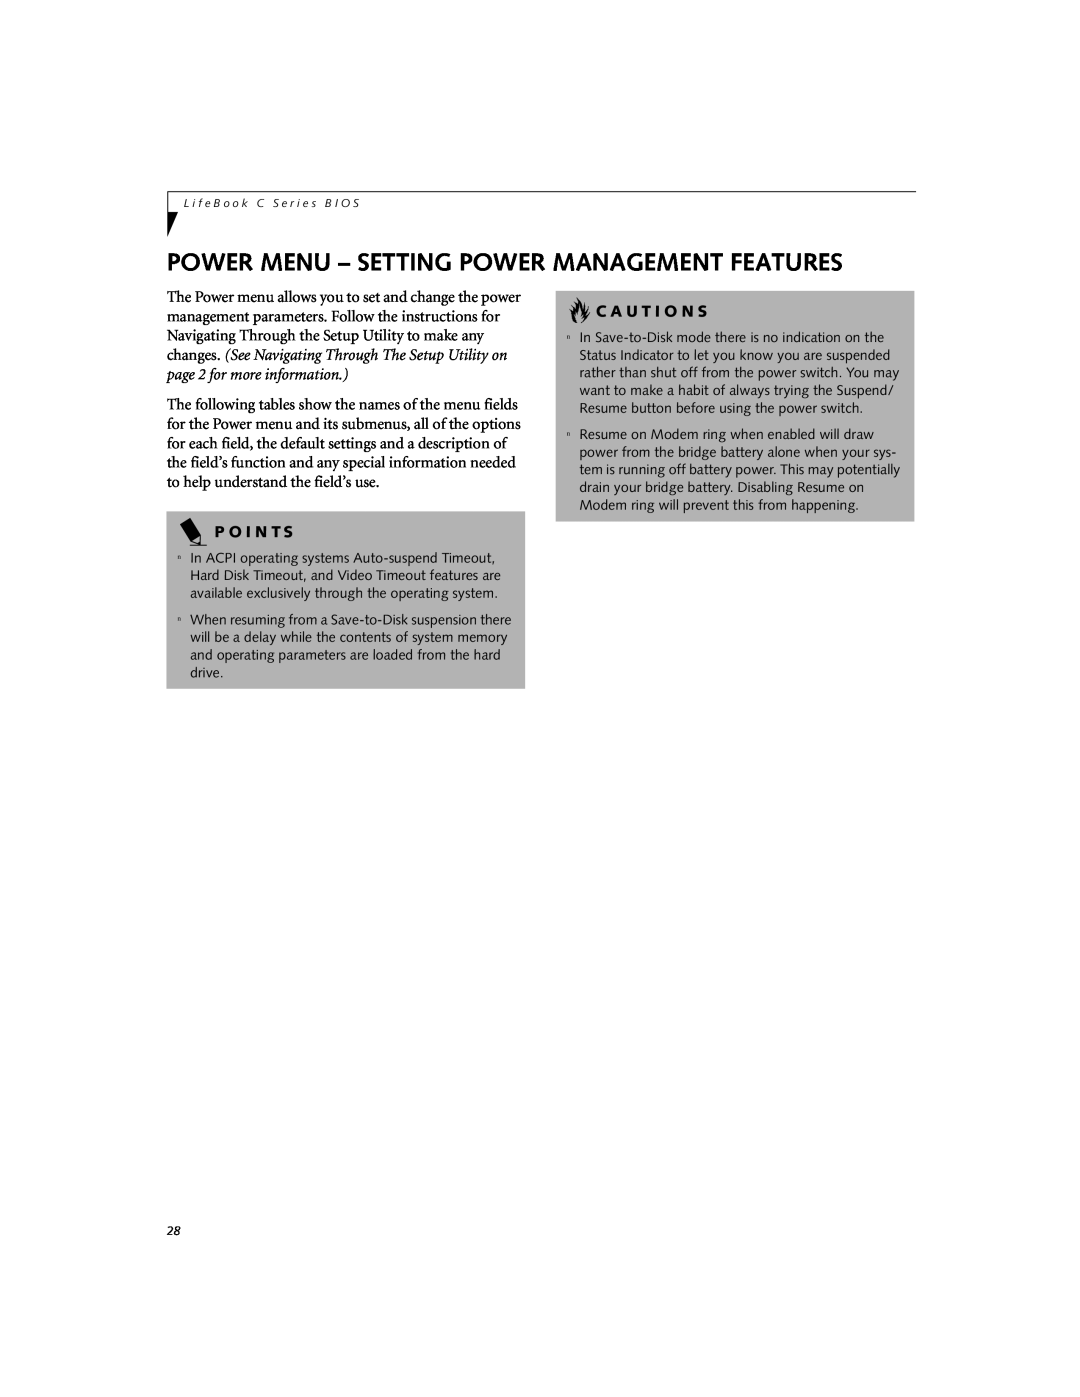 Fujitsu C-7661, C-6651, C-7651 manual Power Menu - Setting Power Management Features, C A U T I O N S, P O I N T S 